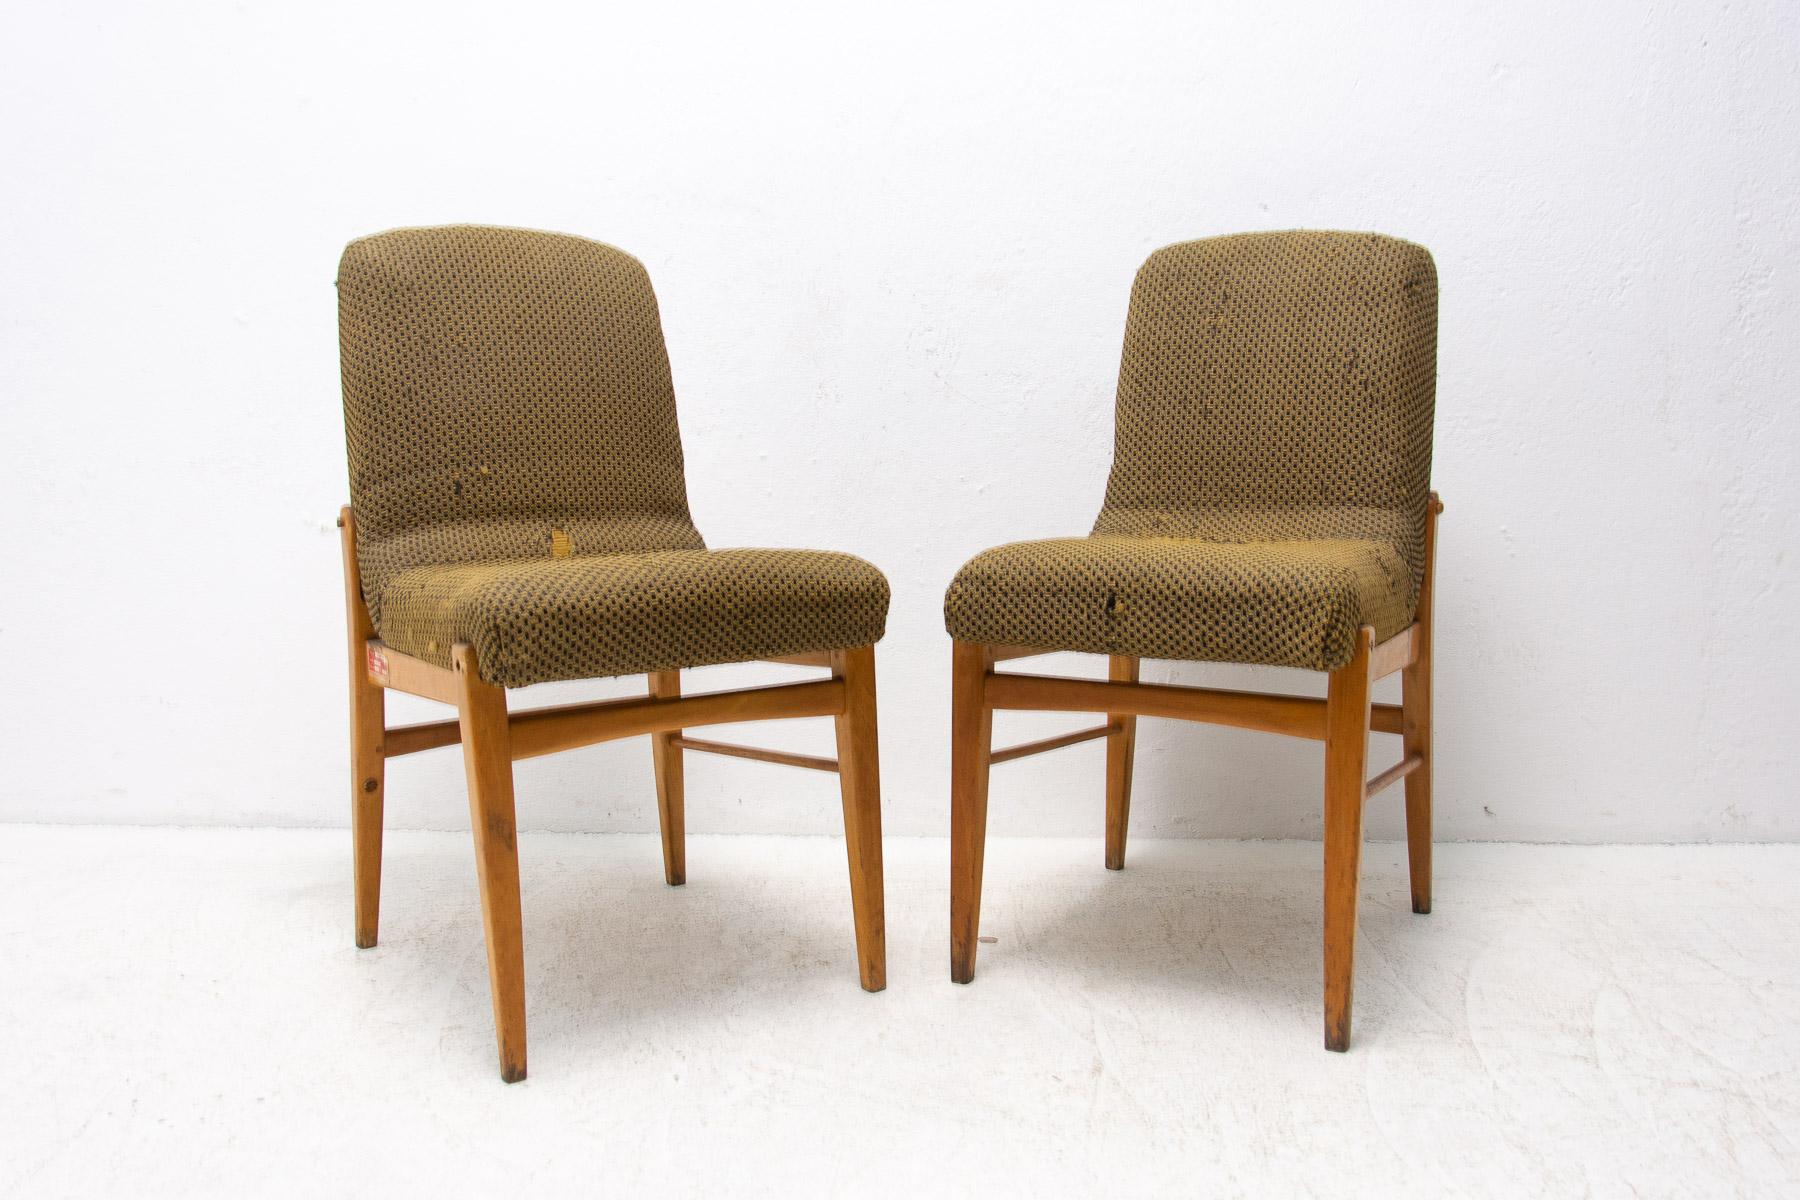 Une chaise de salle à manger rembourrée, fabriquée dans l'ancienne Tchécoslovaquie dans les années 1960. Les chaises sont construites en bois de hêtre. Un façonnage très intéressant. La tapisserie montre des signes significatifs d'âge et